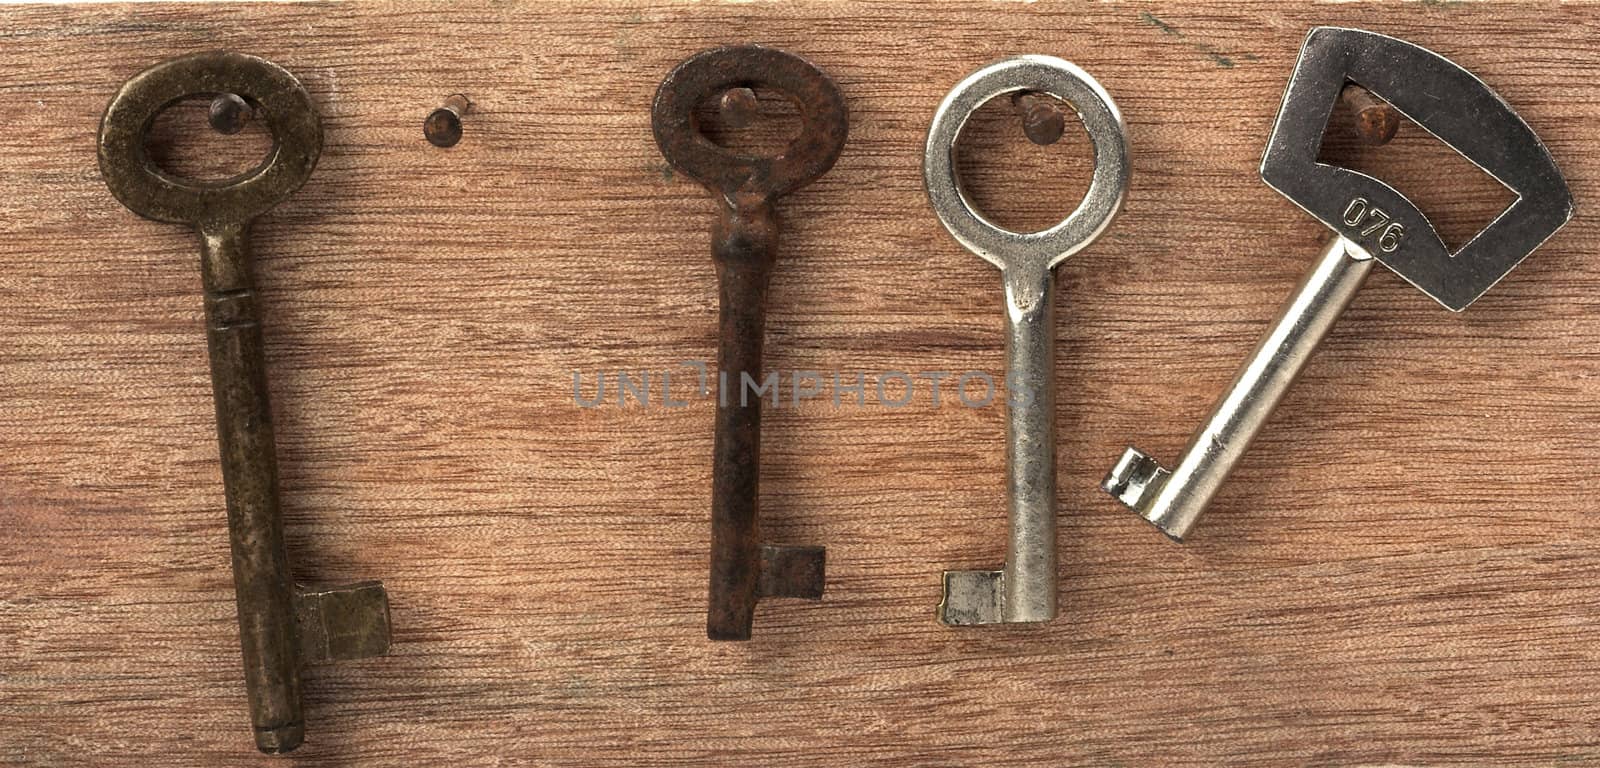 Some vintage keys,close up